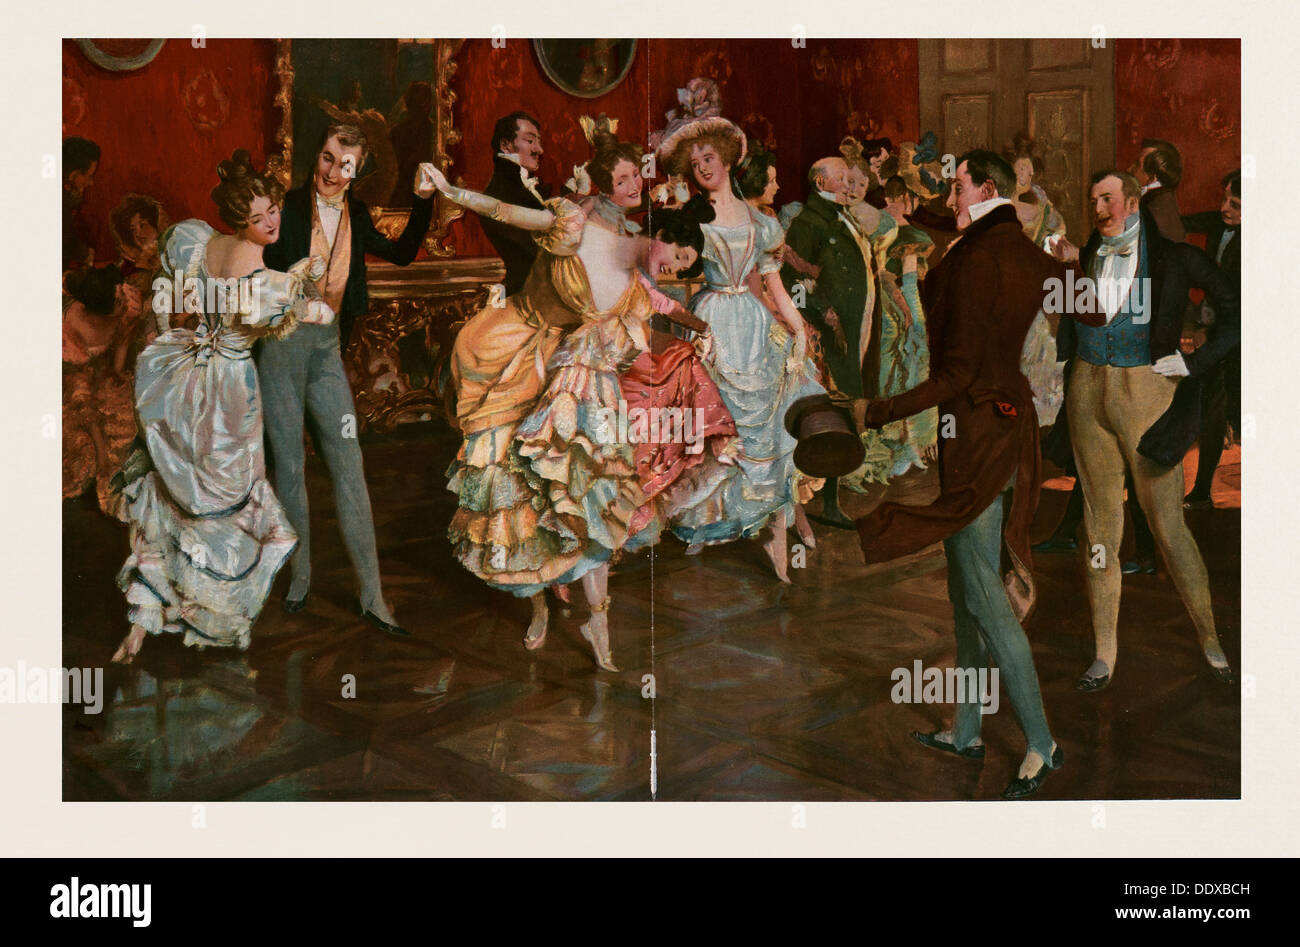 Tanz-Gemälde von Leopold Schmutzler 1864-1941, böhmischer Maler, lebte in Deutschland. tanzen, Tänzer, jung, Bewegung, Weiblich, Männlich Stockfoto